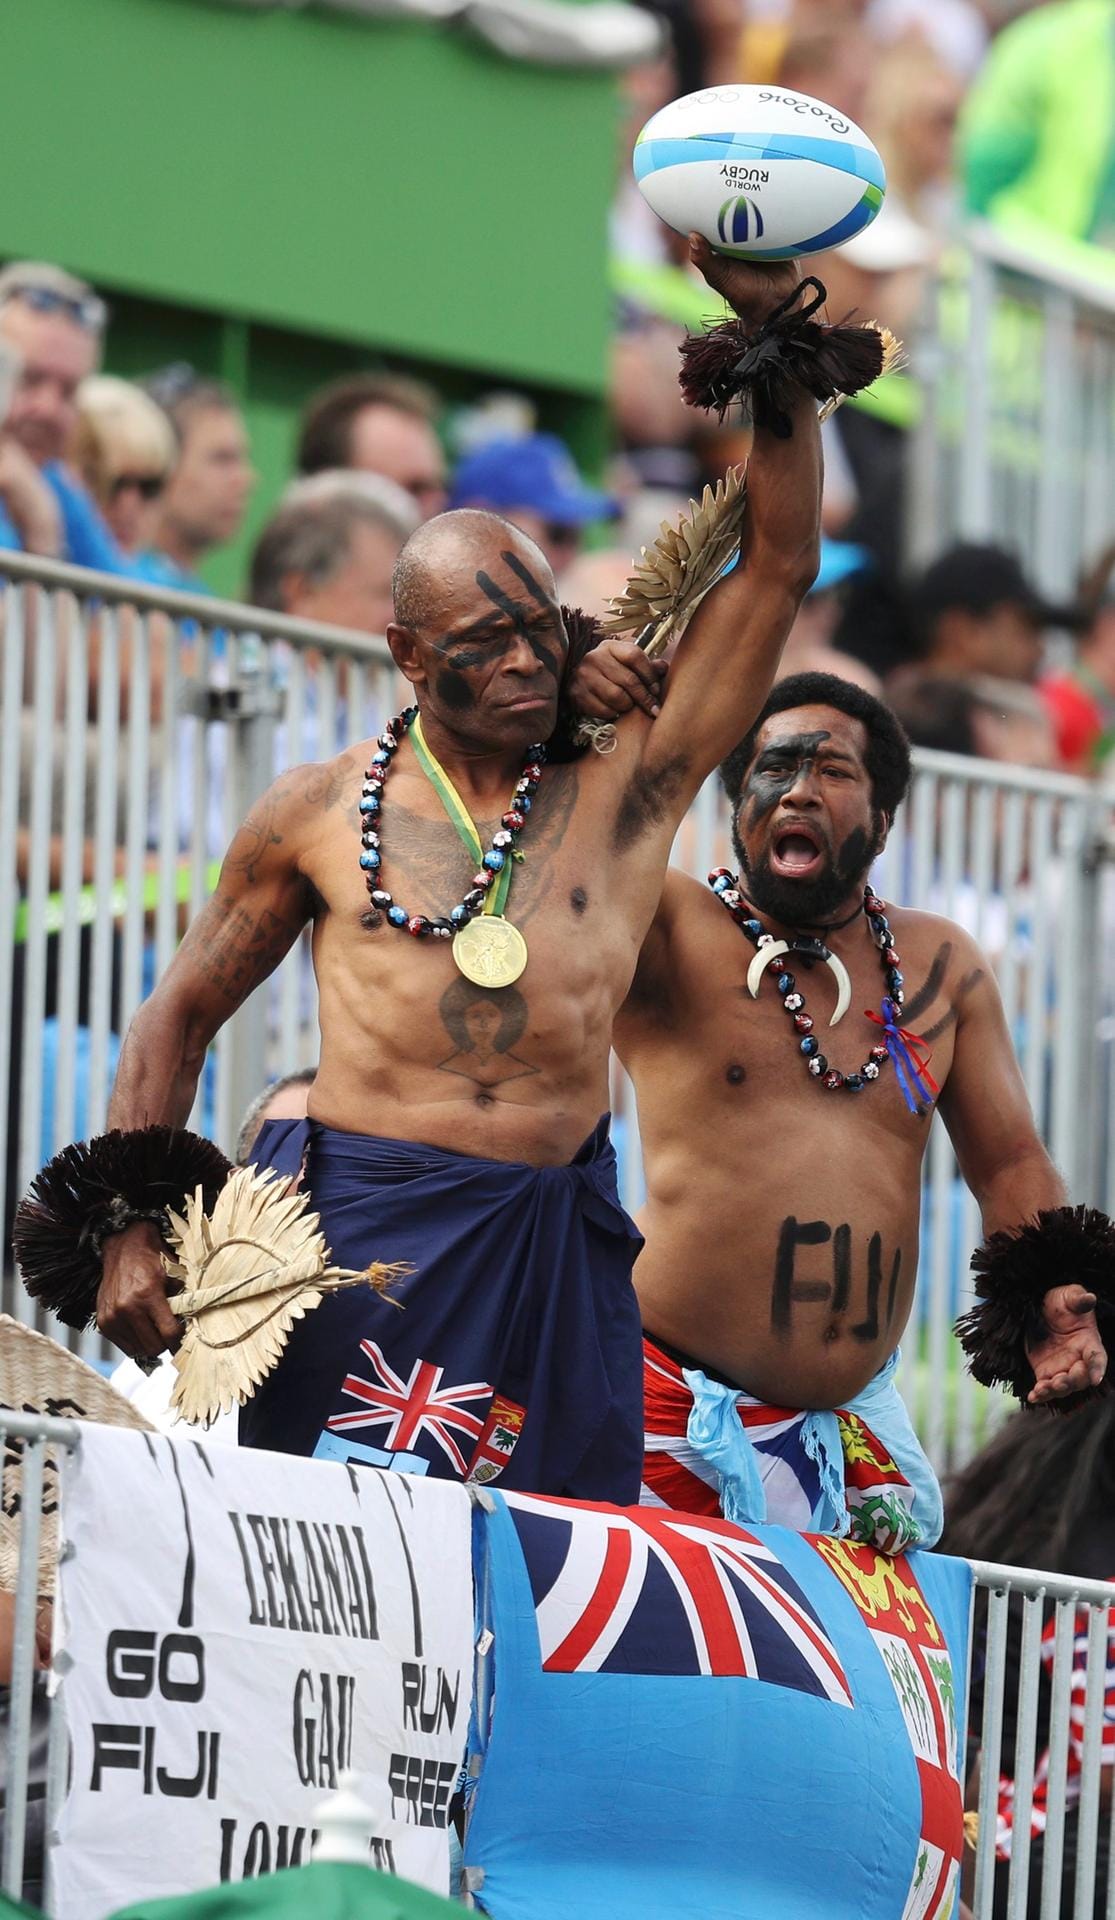 Voodoo-Zauber beim Rugby? Diese Fans der Fidschi-Inseln scheinen beim Spiel gegen die Japaner einen Geist zu beschwören. Gebracht hat es tatsächlich was: Die Rugby-Männer des Inselstaats gewinnen und sichern sich so bereits vor dem Finale die erste Olympia-Medaille für ihr Land.